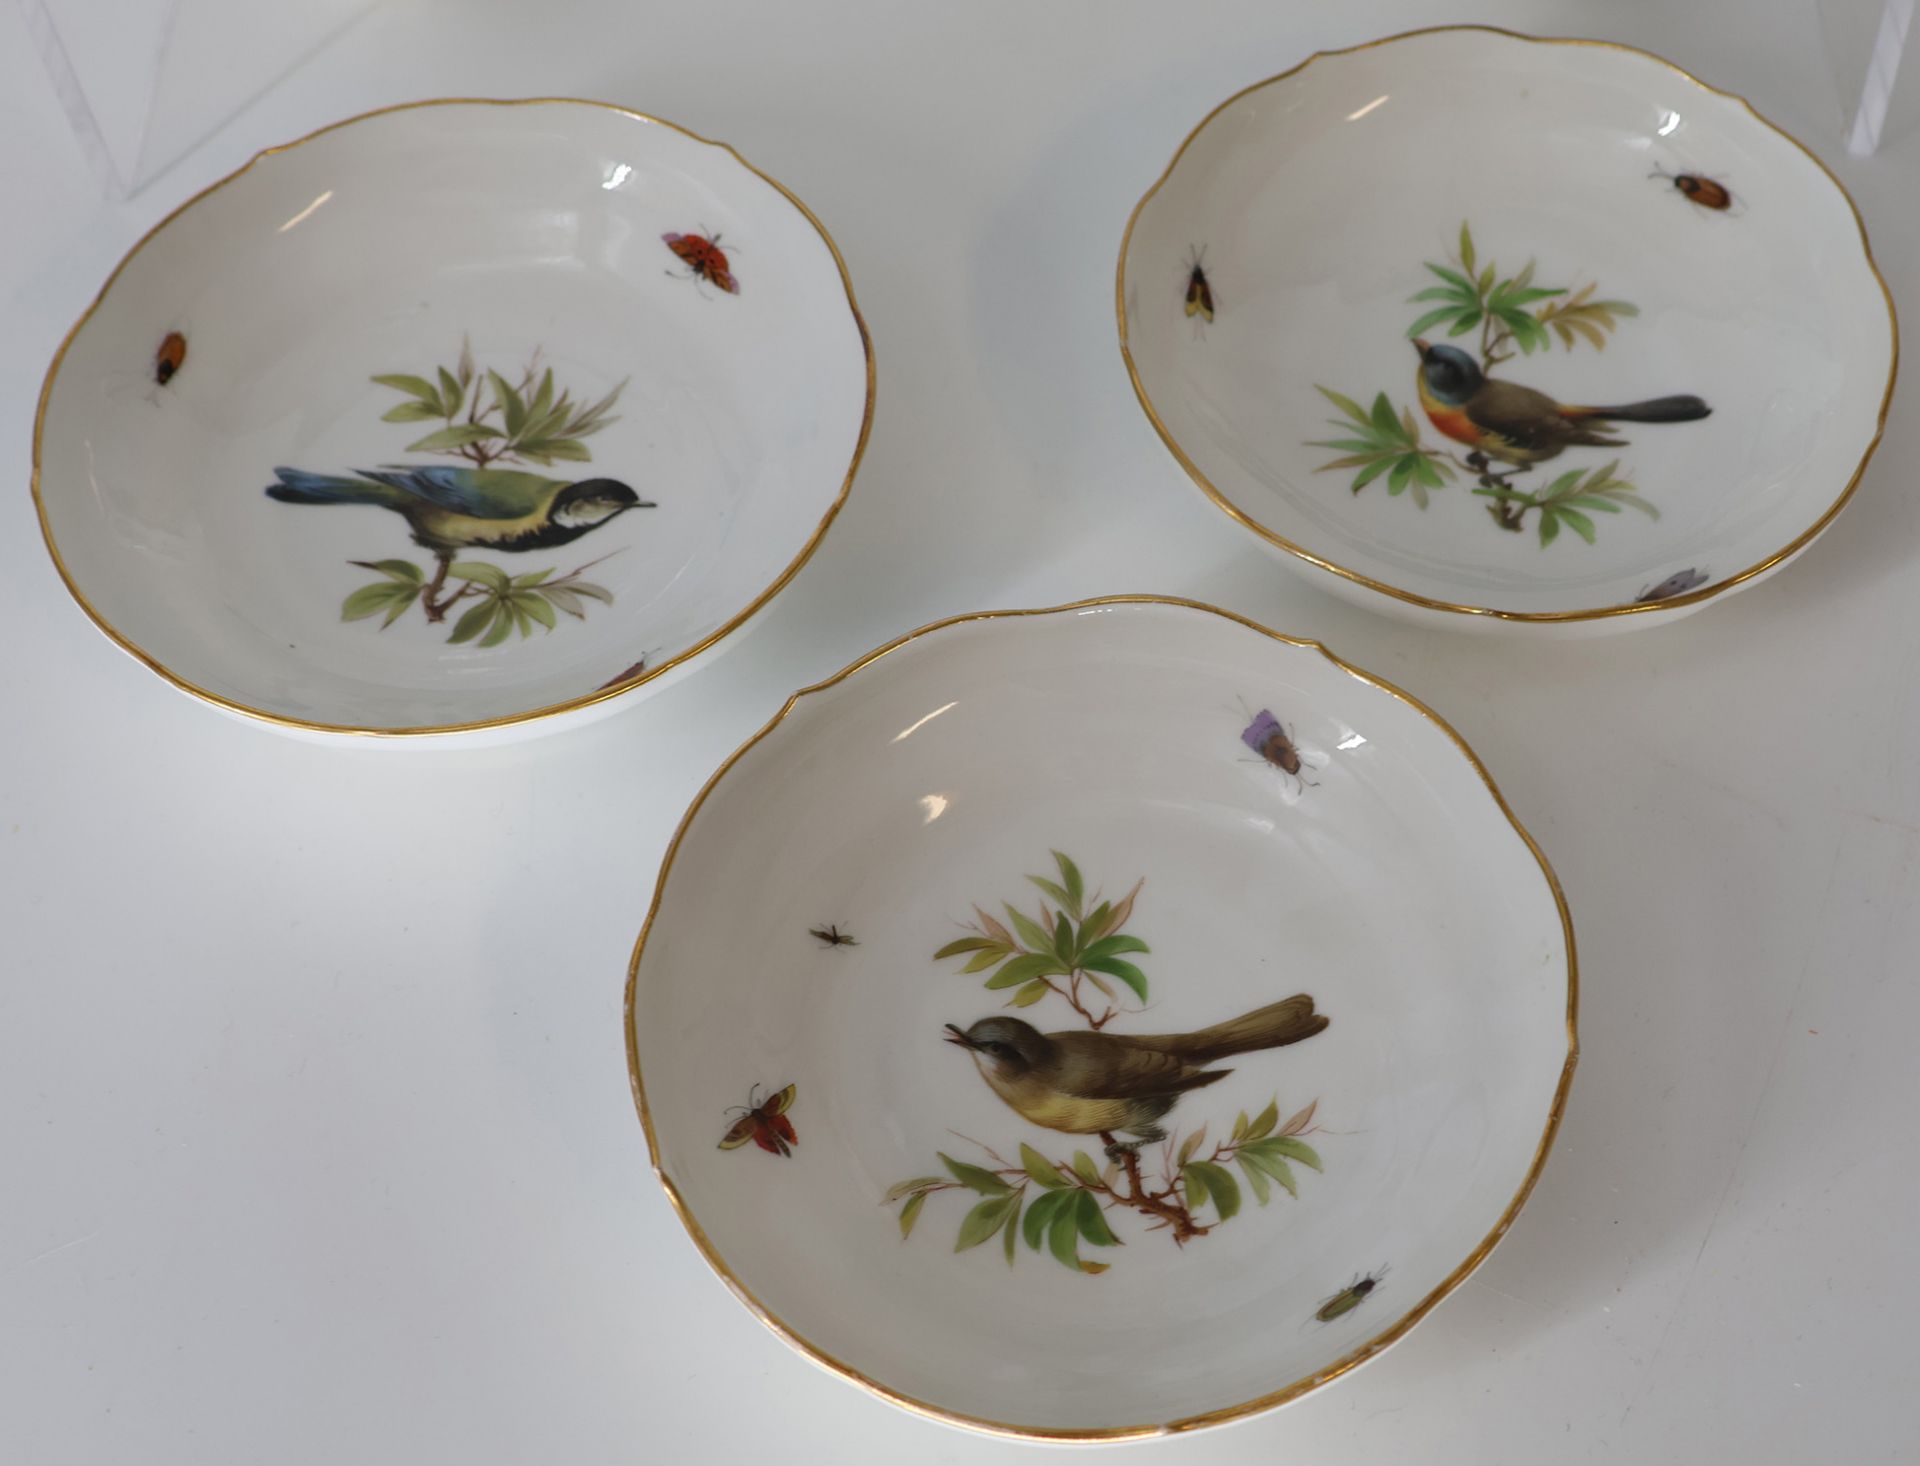 Kaffeeservice Porzellan, Meissen, Goldrand, feine Malerei mit Vögeln und Insekten, Schwertermarke - Bild 8 aus 8